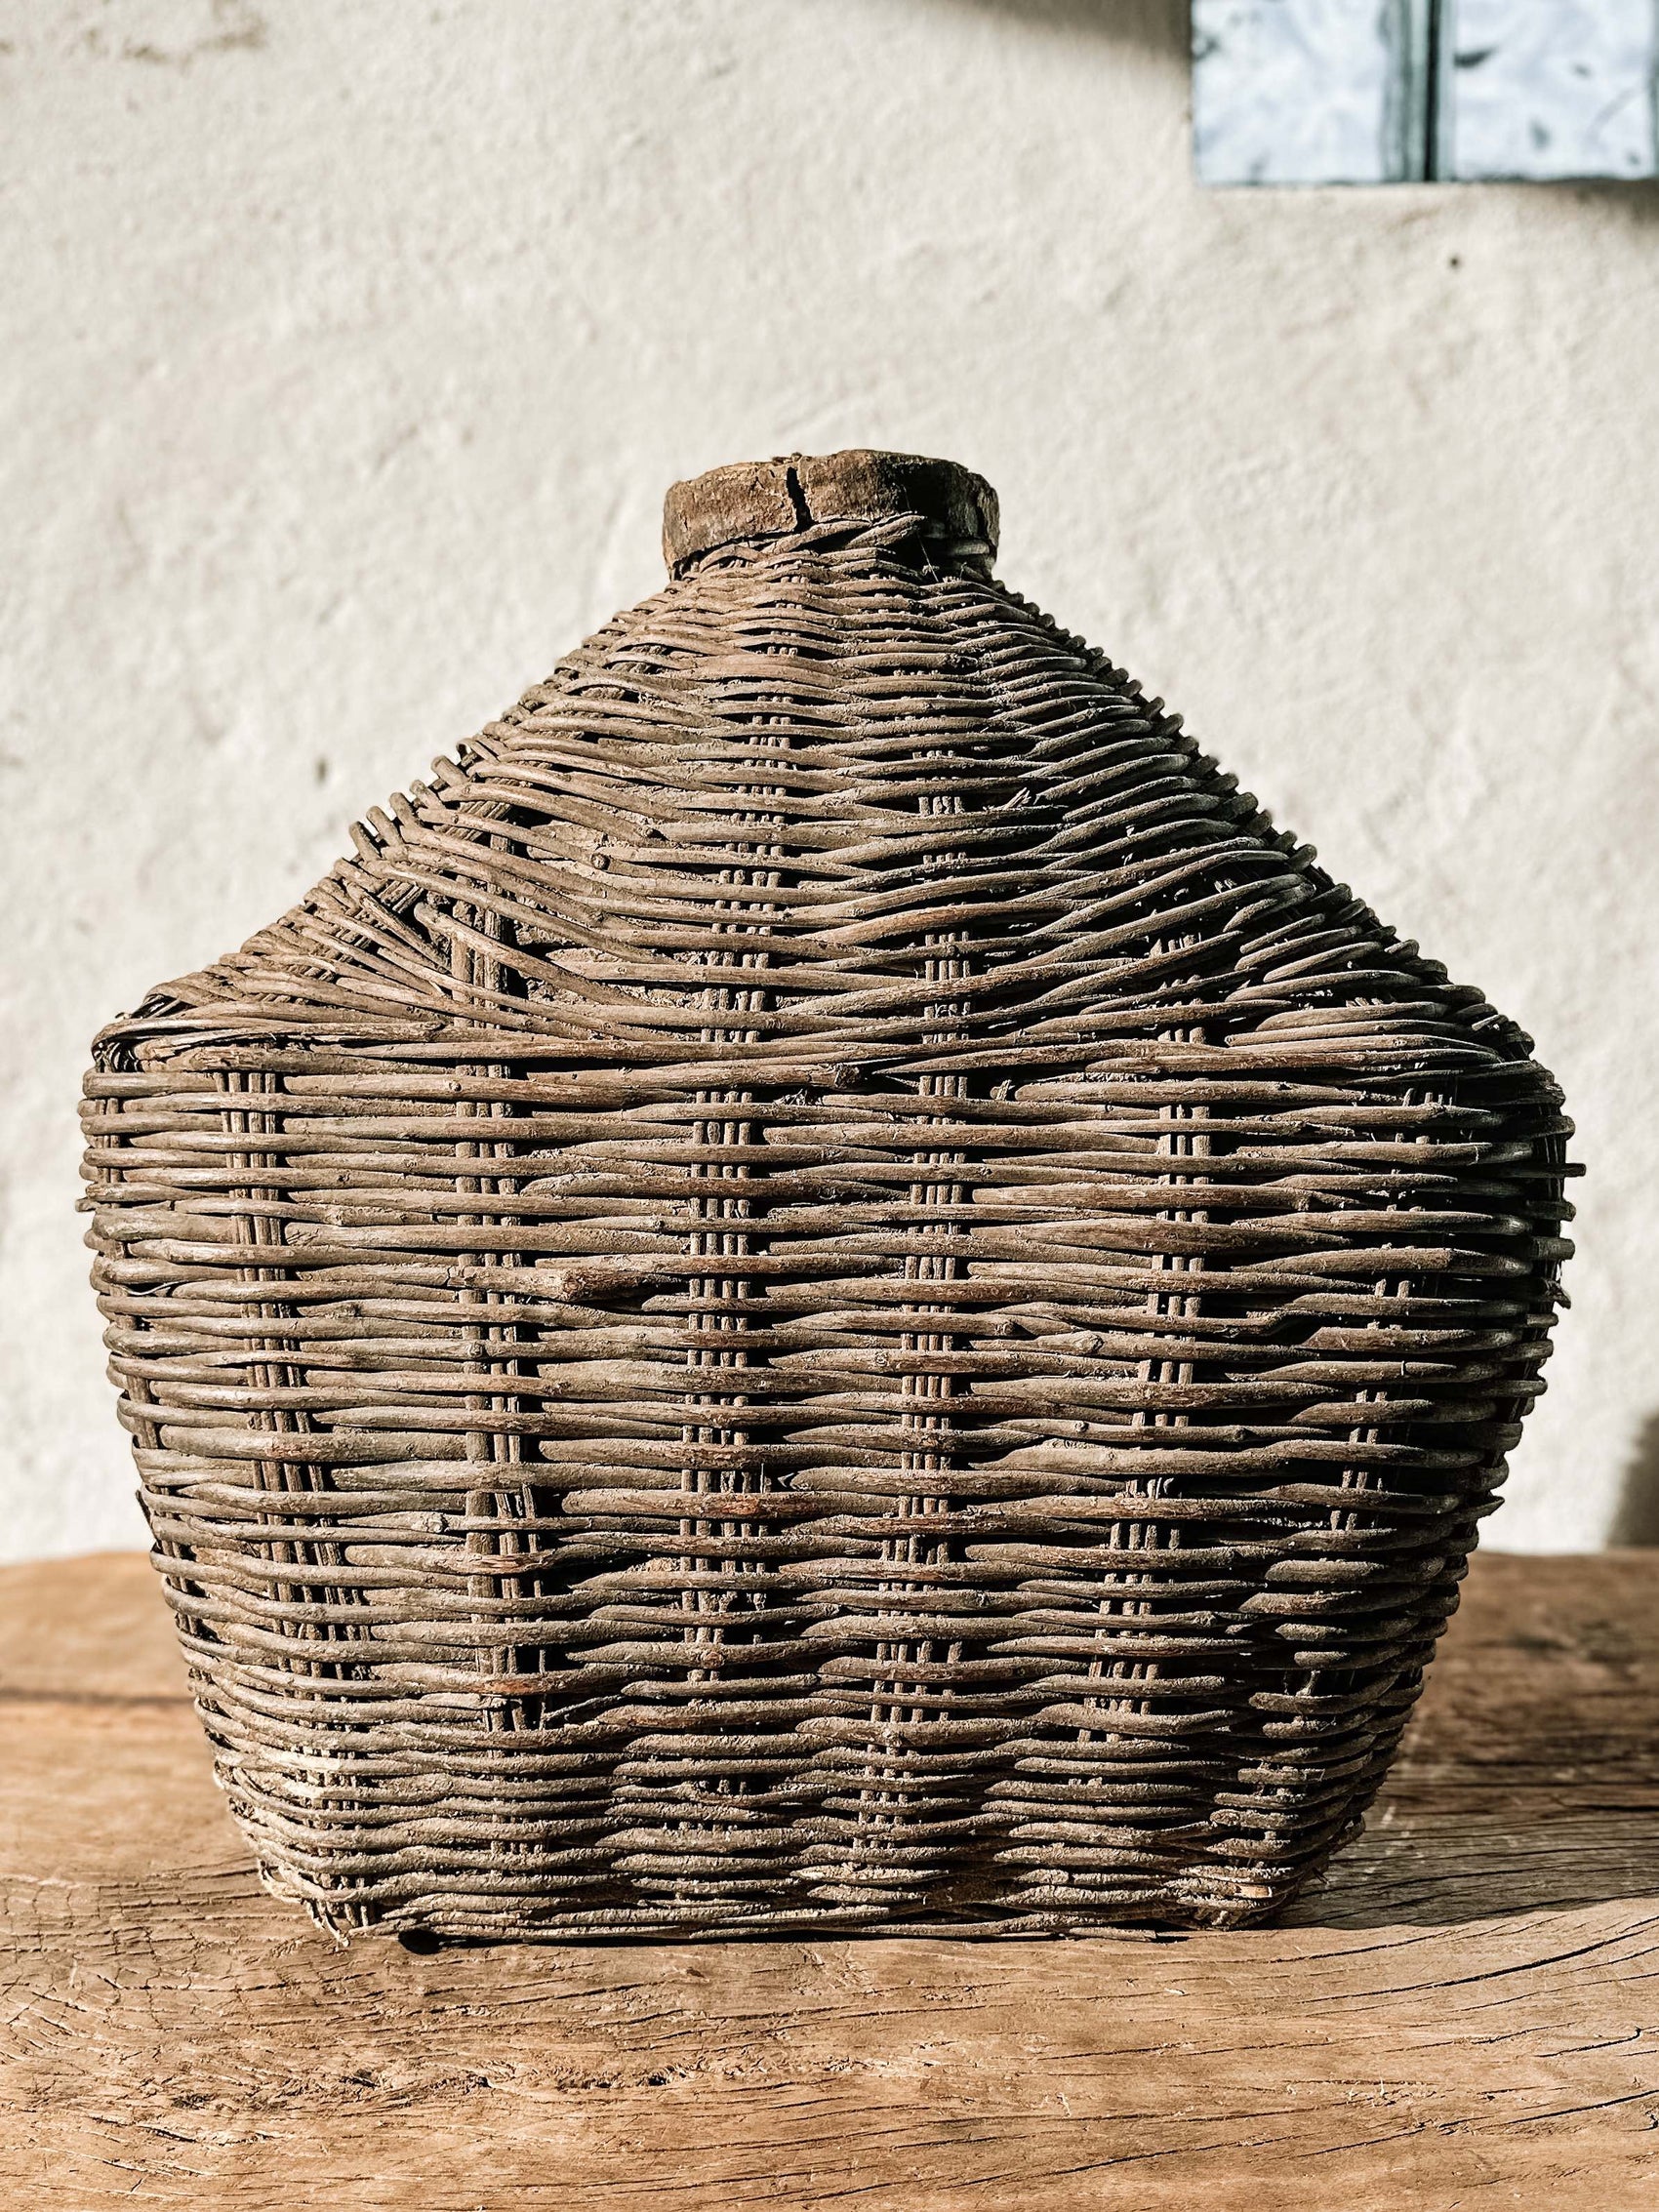 Old loam basket #9